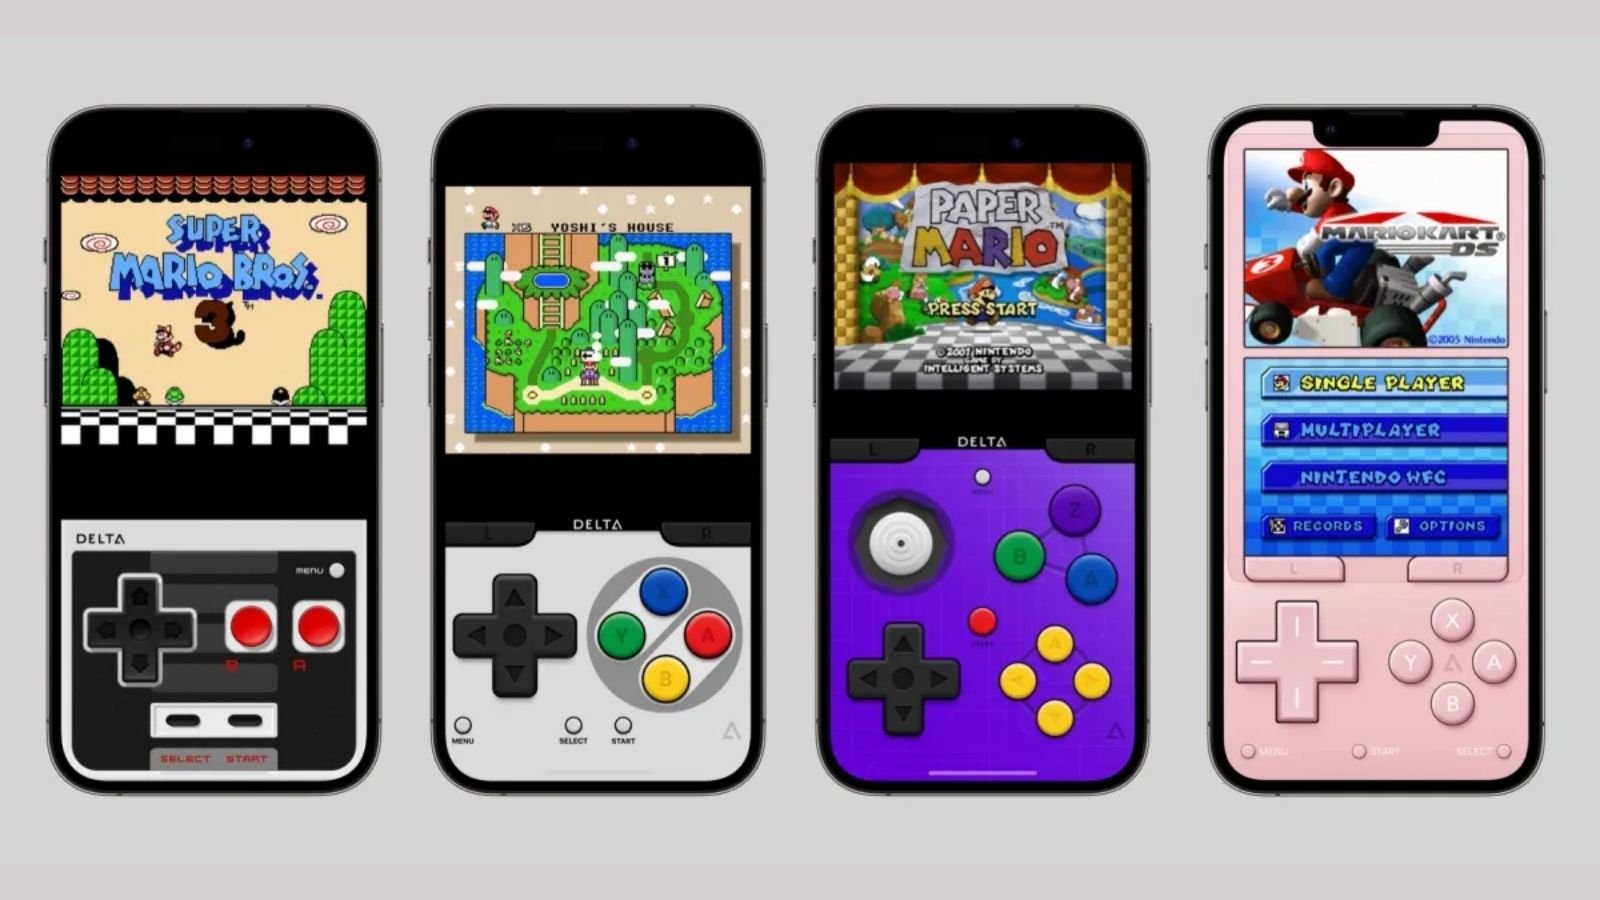 Nintendo markalı oyunları iPhone’a getiren Delta oyun emülatörü kısa süre önce App Store’da yerini aldığında büyük yankı bulmuştu. 